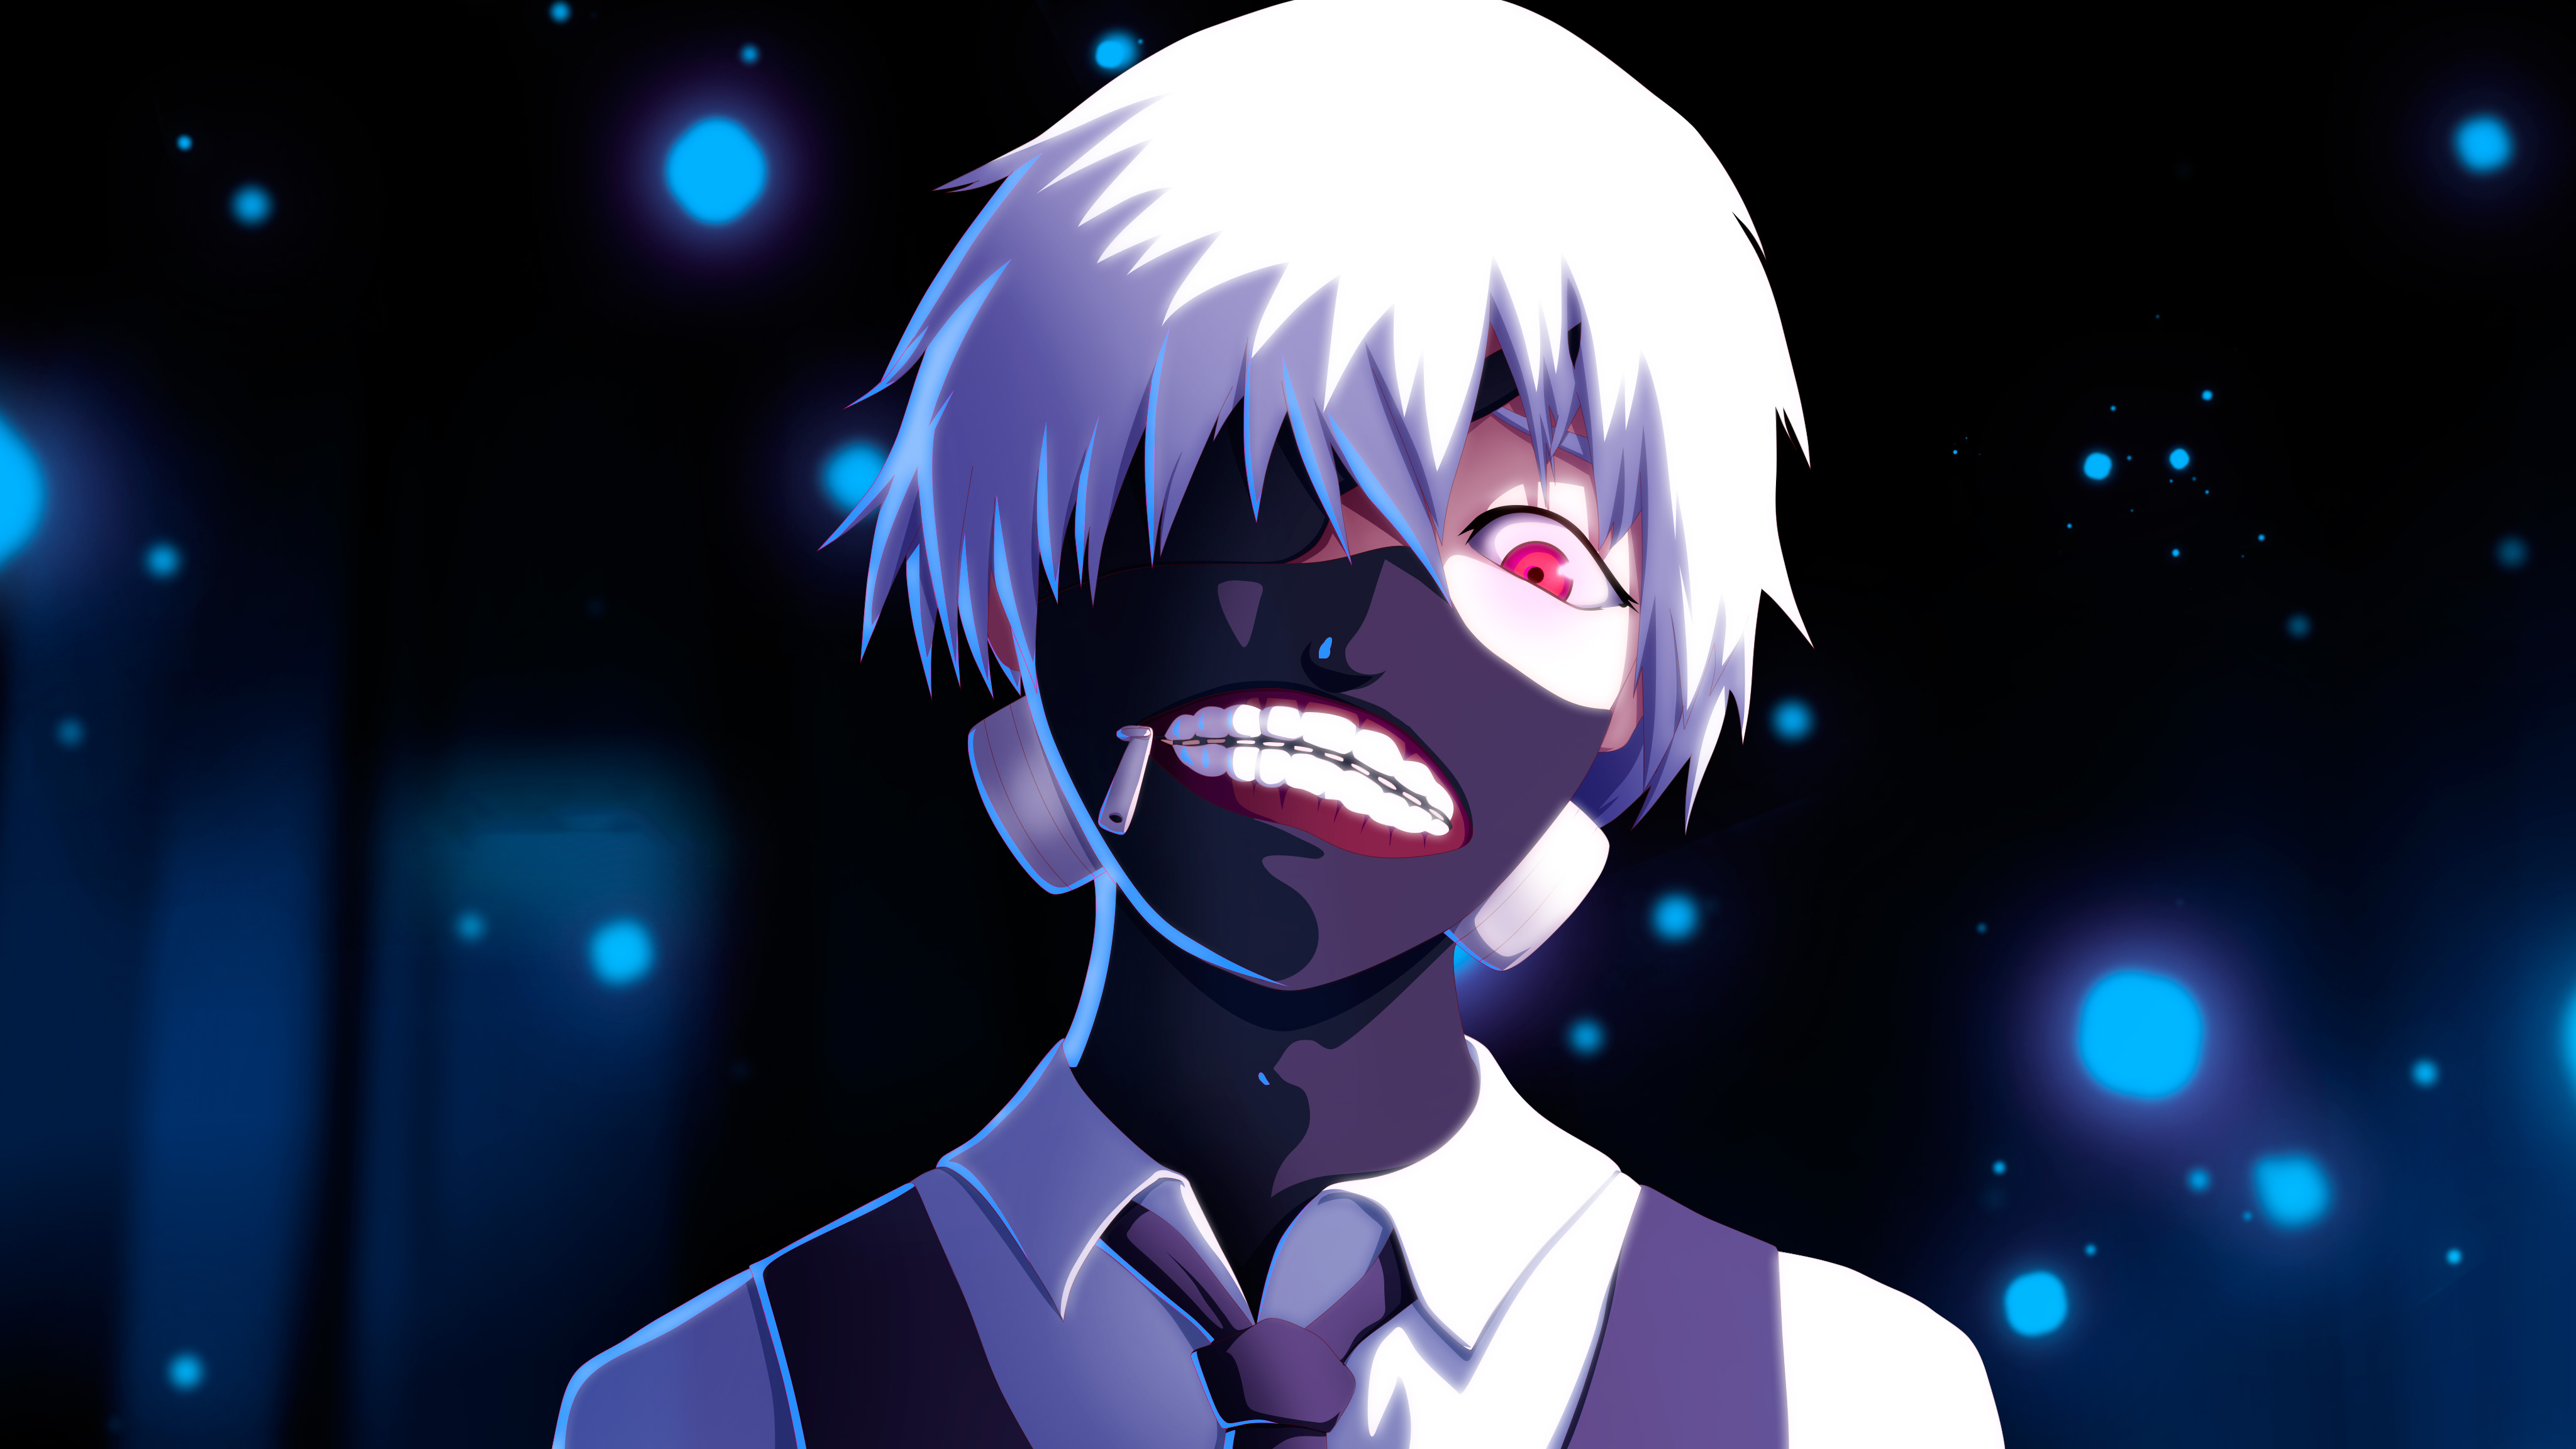 Ken Kaneki Tokyo Ghoul 4k Art, HD Anime, 4k Wallpapers, Images